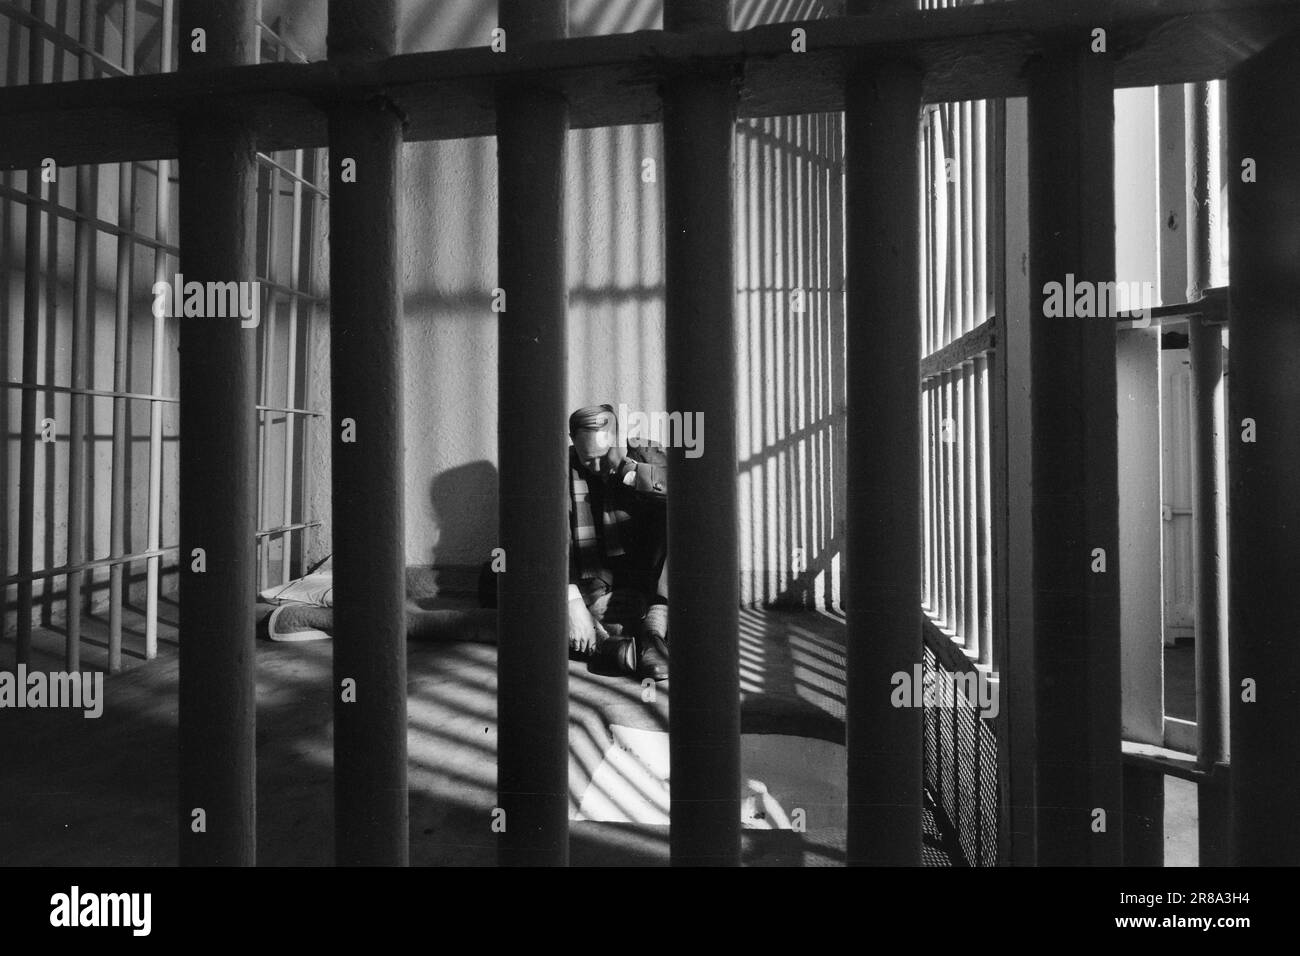 Aktuell 3-3-1960: Menschen hinter Gittern Was geschieht hinter diesen düsteren Mauern? Gefangene werden in Eisen und Käfige gesteckt, behauptet Jens Bjørneboe. Folter! ruft Dagbladet. Wir setzen Zwangsmaßnahmen ein, um zu verhindern, dass sich die Gefangenen selbst verletzen, und antworten der Gefängnisleitung. Was ist die Wahrheit? Wie fühlt es sich an, „auf einem Ast zu liegen“? Der Mitarbeiter von Aktuell hat es ausprobiert! Unser Mitarbeiter darf den „Käfig“ ausprobieren, eine der Sicherheitszellen im Keller des Gefängnisses. Es gibt einen 4–5 m2 großen Betonboden mit rundherum installierten Sprinklern. Eine Matratze und zwei Wolldecken sind der gesamte Inhalt der Zelle. Foto: Sve Stockfoto